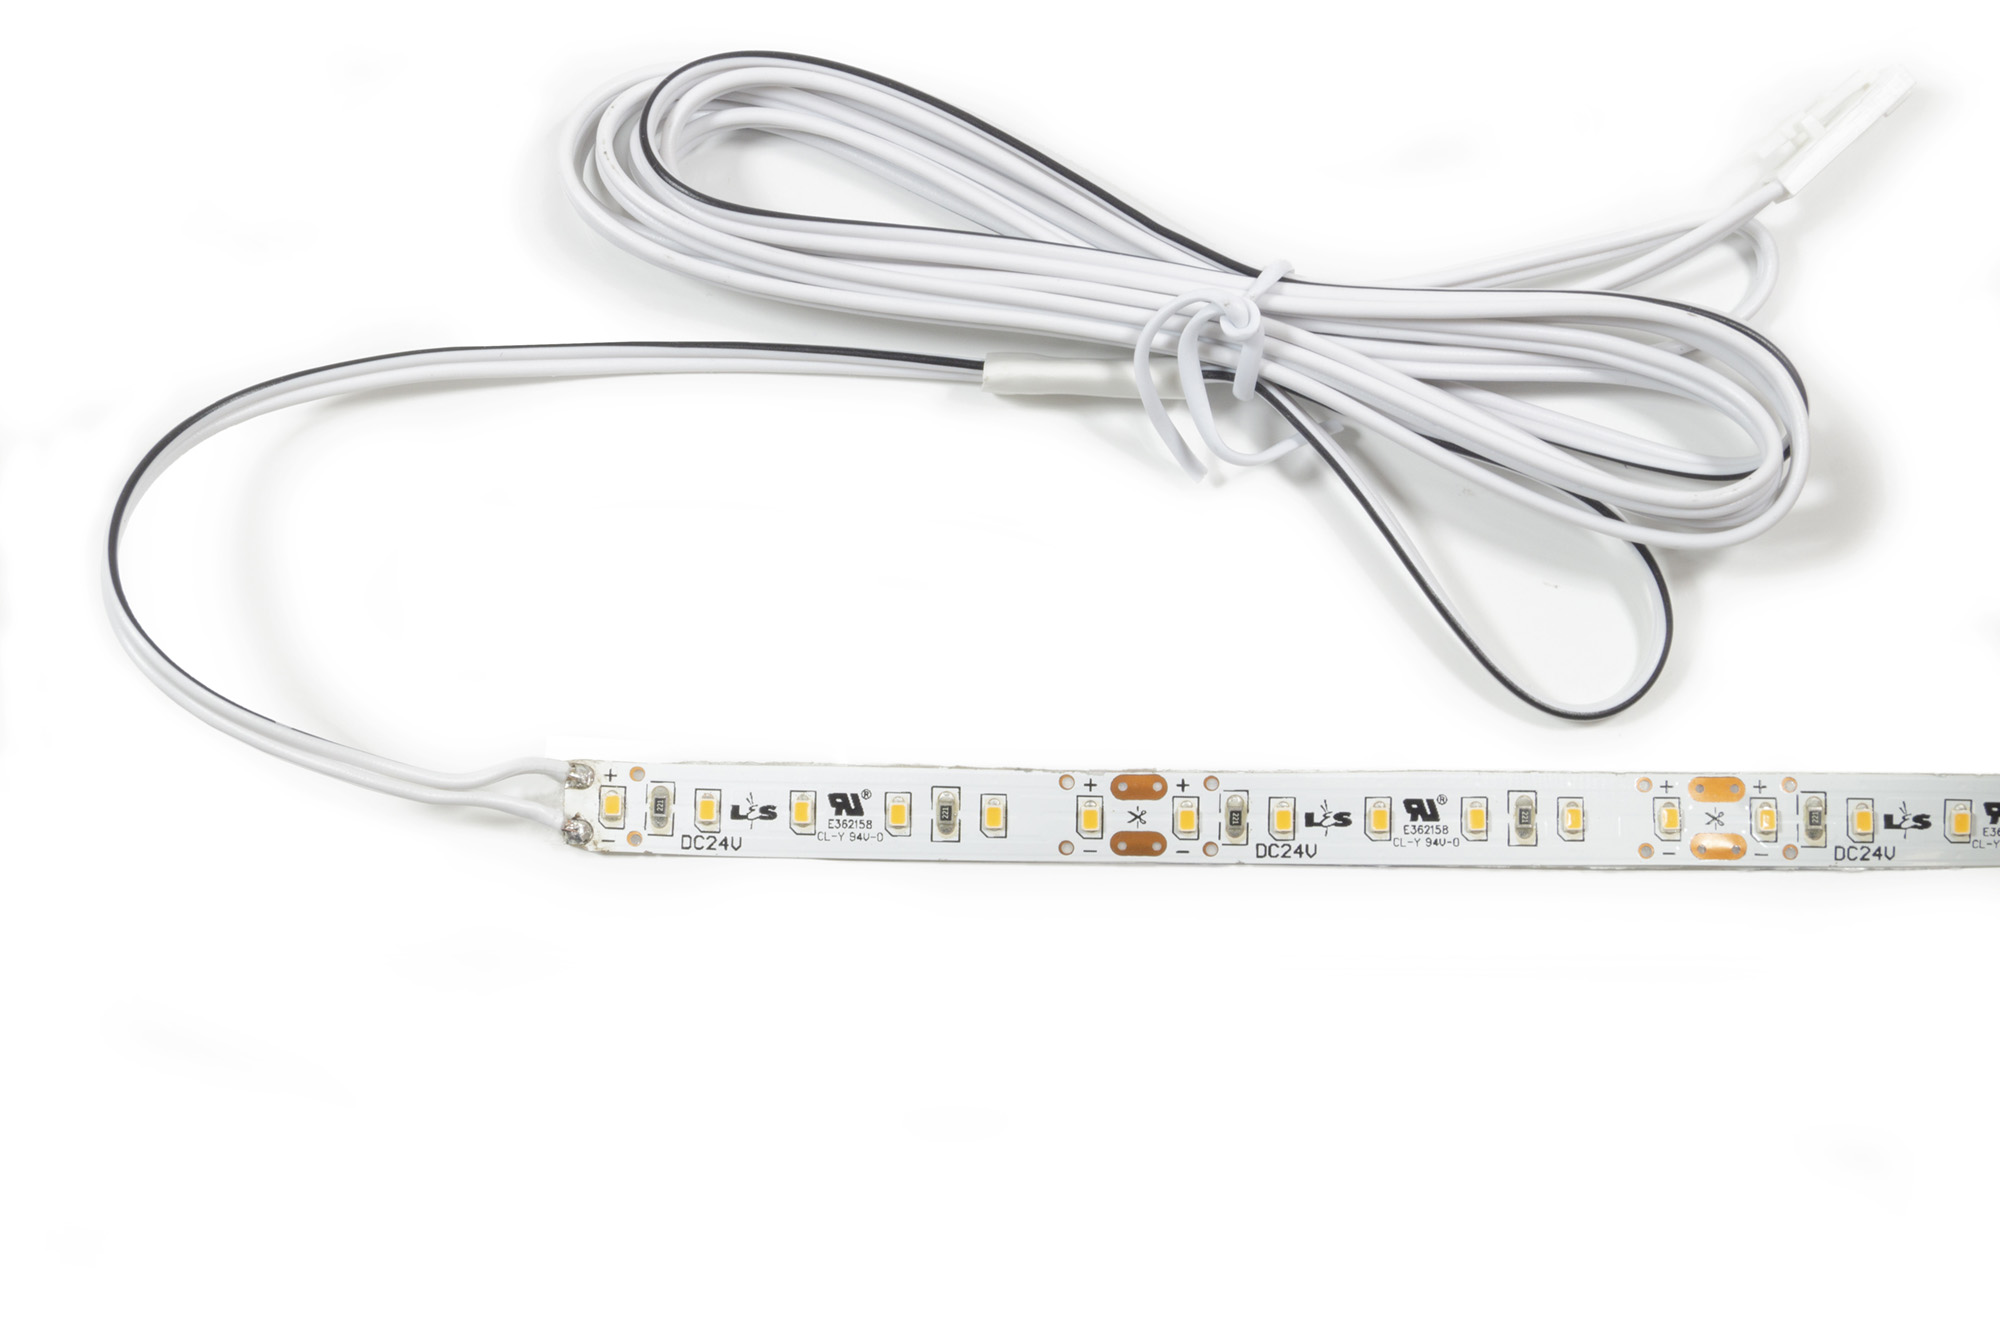 L&S LED Band Tudo 24V 8 mm 7,2W/m 120LED/m XW 2700 K 5 m 1,8m Zul.